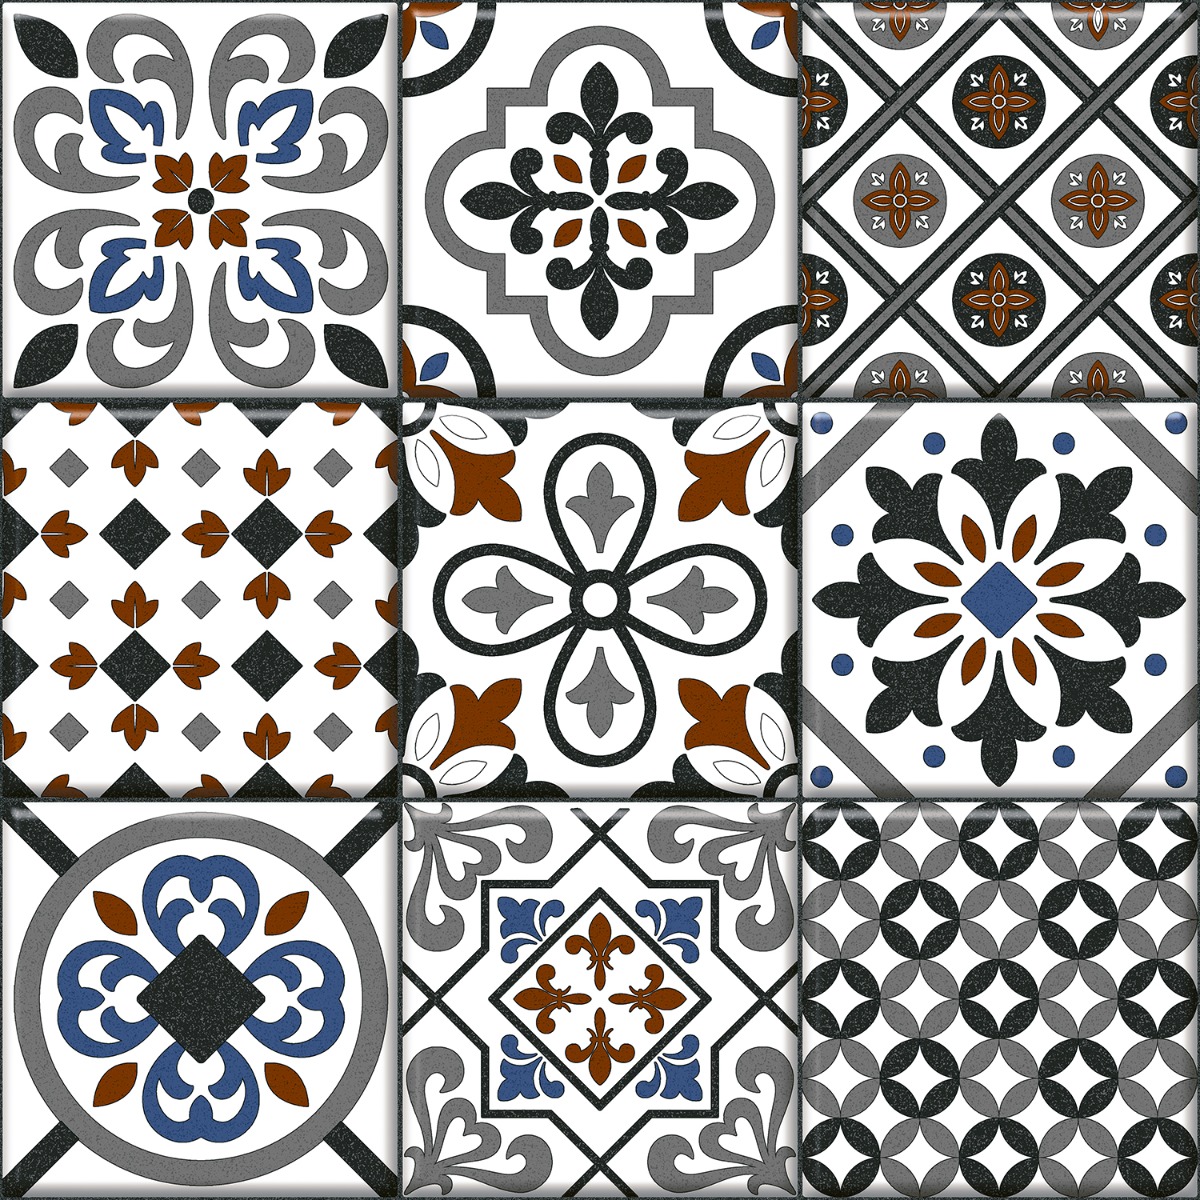 White Tiles for Bathroom Tiles, Balcony Tiles, Hospital Tiles, Bar/Restaurant, Commercial/Office, Outdoor/Terrace